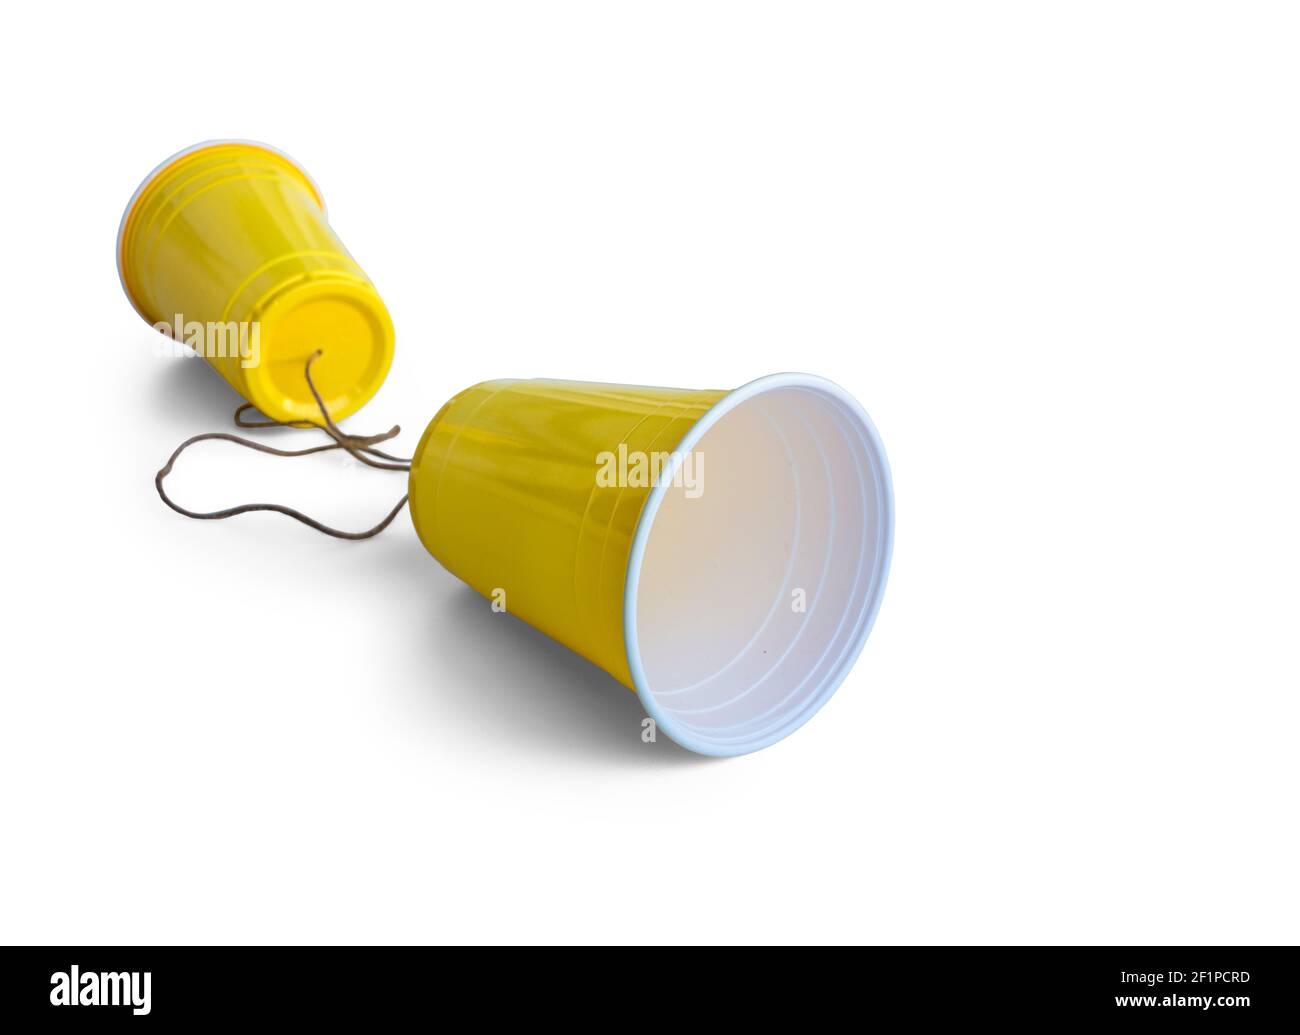 Comunicación Copa de plástico amarilla con cuerda aislada sobre fondo blanco Foto de stock